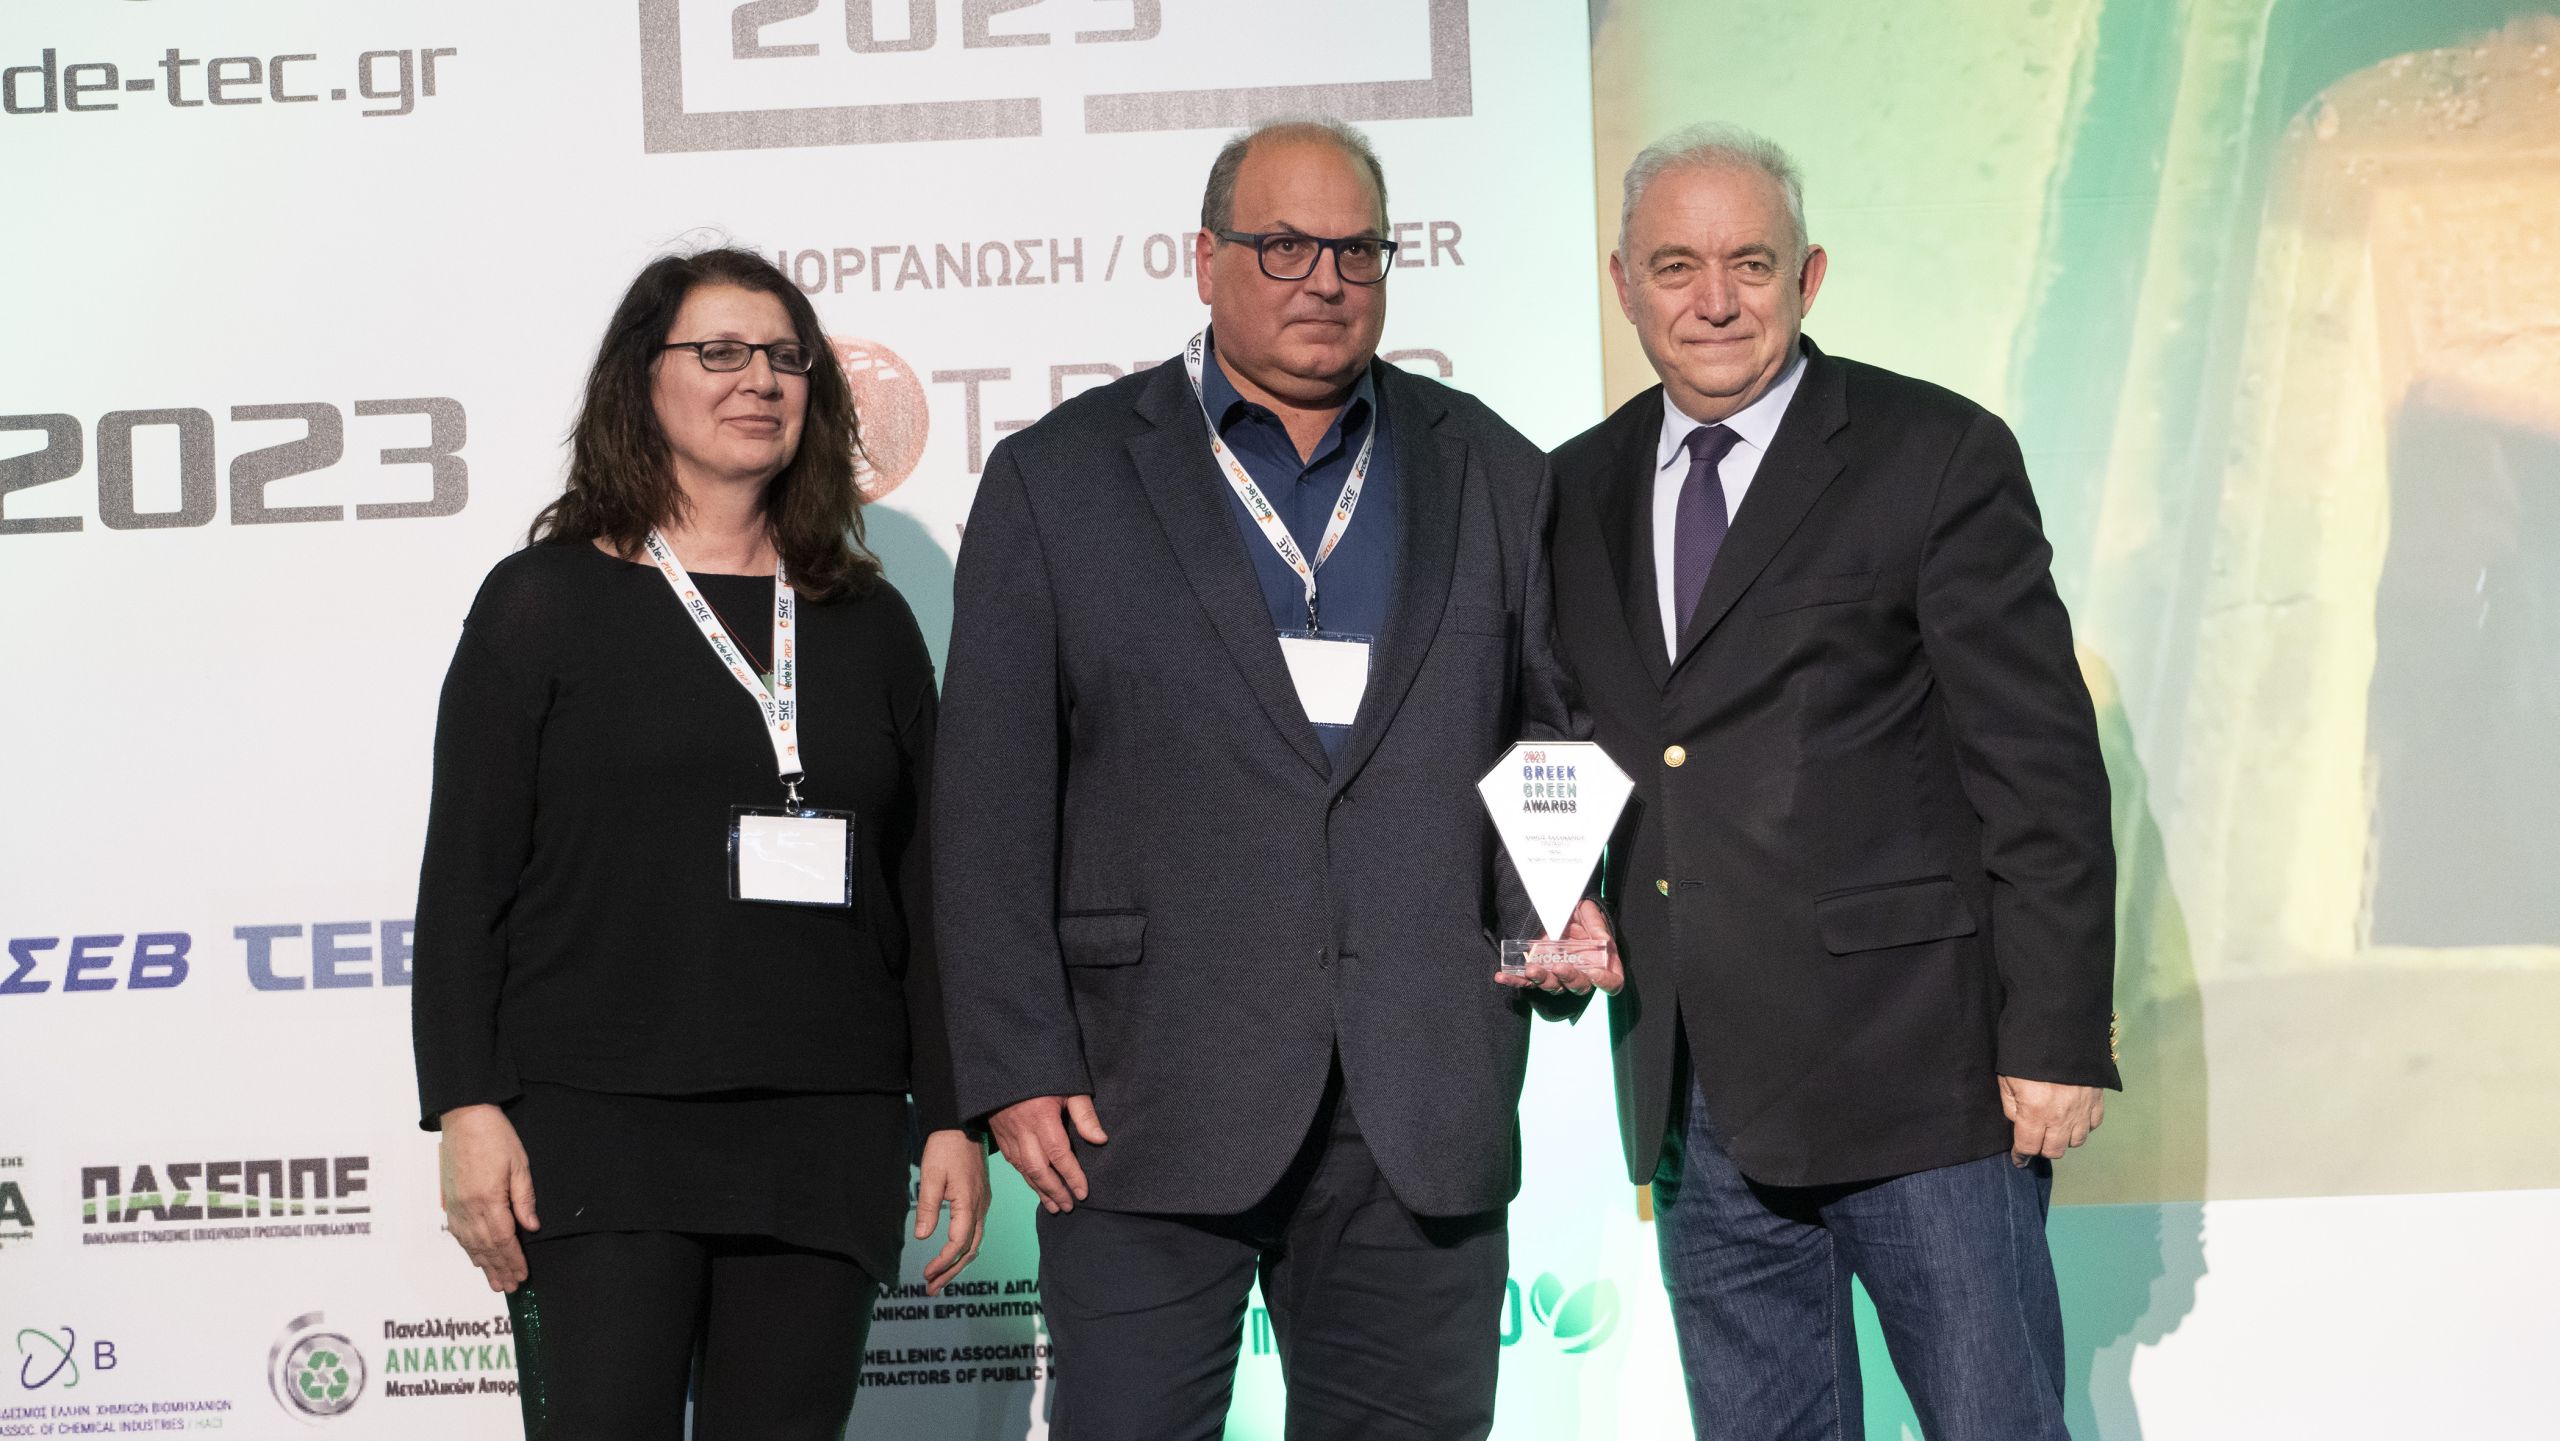 Δύο βραβεία στον δήμο Χαλανδρίου για το πρόγραμμα Cultural Hidrant και τα προγράμματα αποτροπής απωλειών τροφίμων